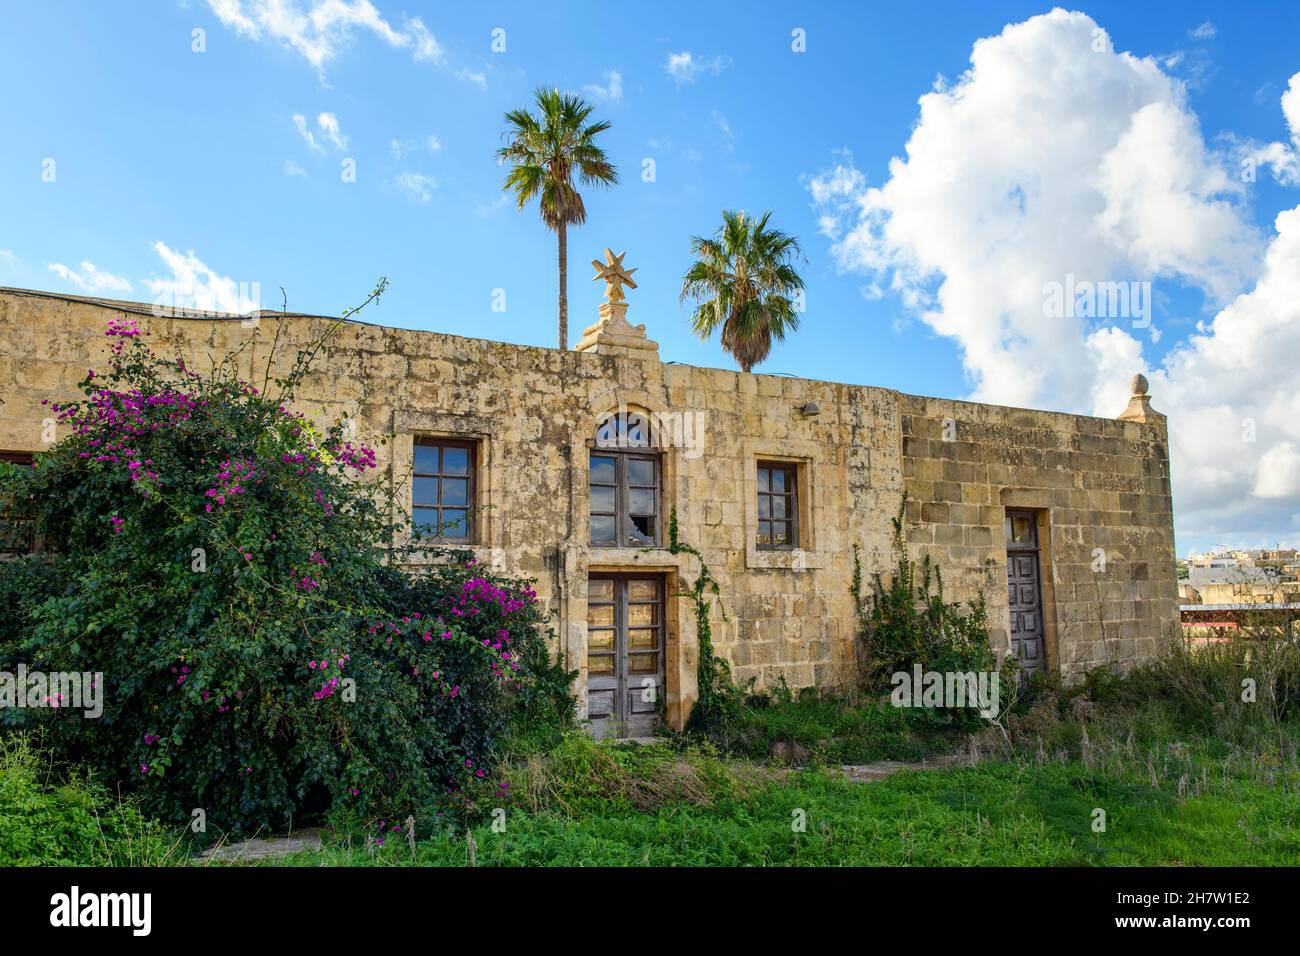 historiisches verlassenes Haus mit Malteserkreuz aus Kalksandstein auf Gelände von Fort Chambray, Insel Gozo, Malta, Europa Foto Stock